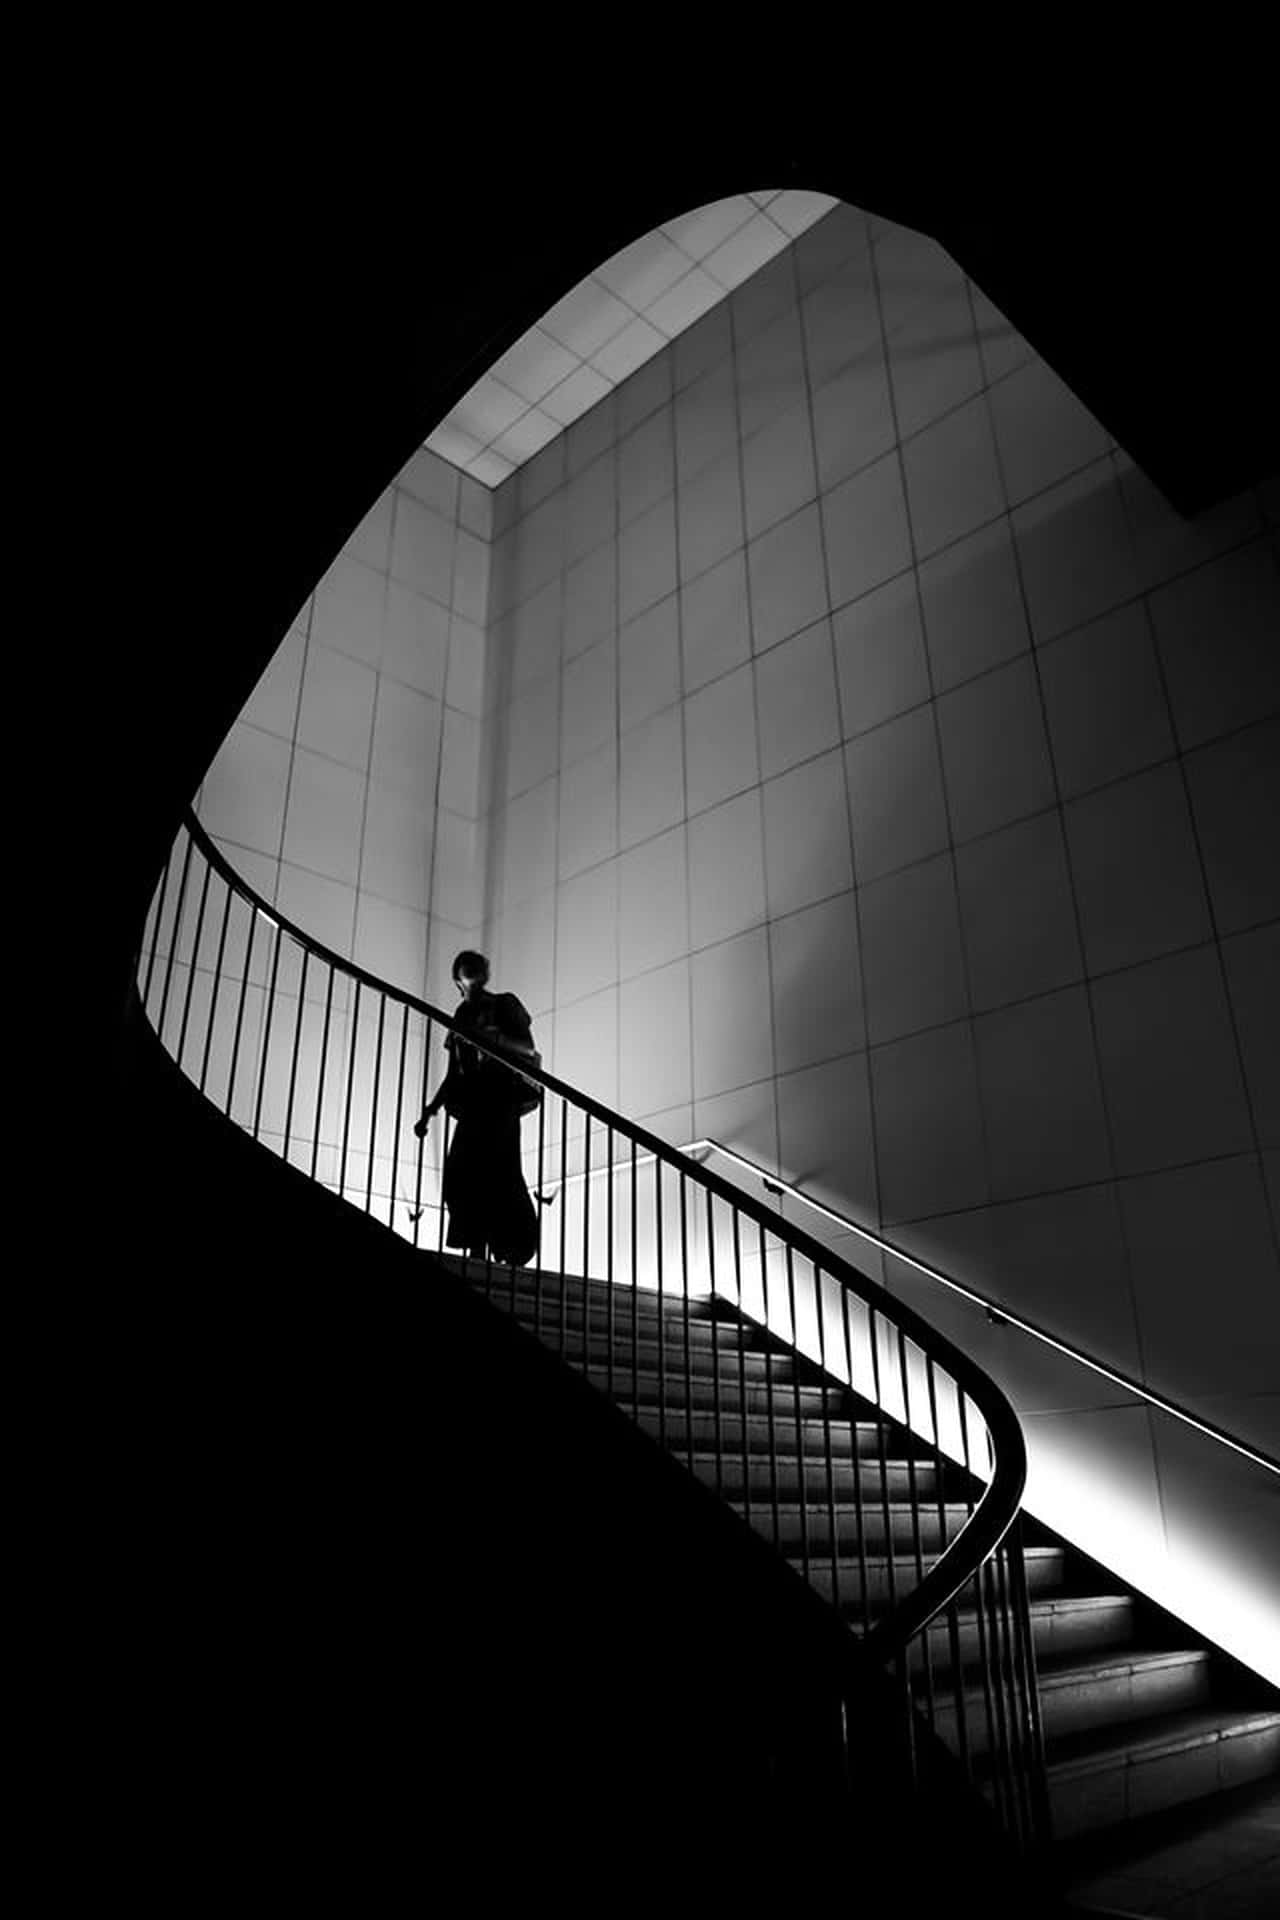 Imagenimpresionante De Escaleras En Blanco Y Negro